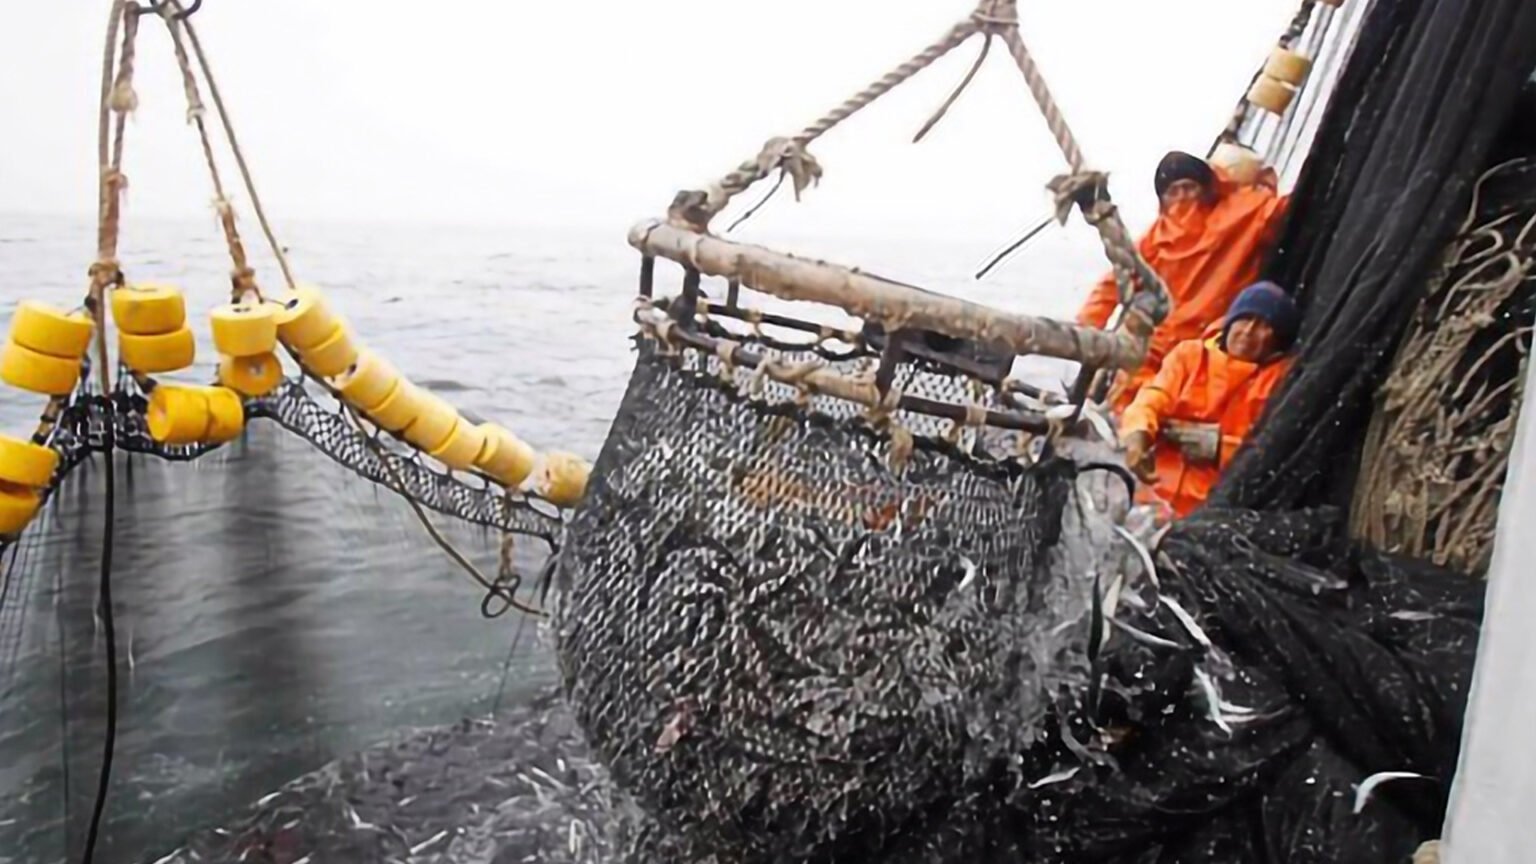 Los veteranos denuncian la pesca ilegal y otras cuestiones que perjudican el medio ambiente. Foto: Observatorio Malvinas Legislatura Rio Negro.